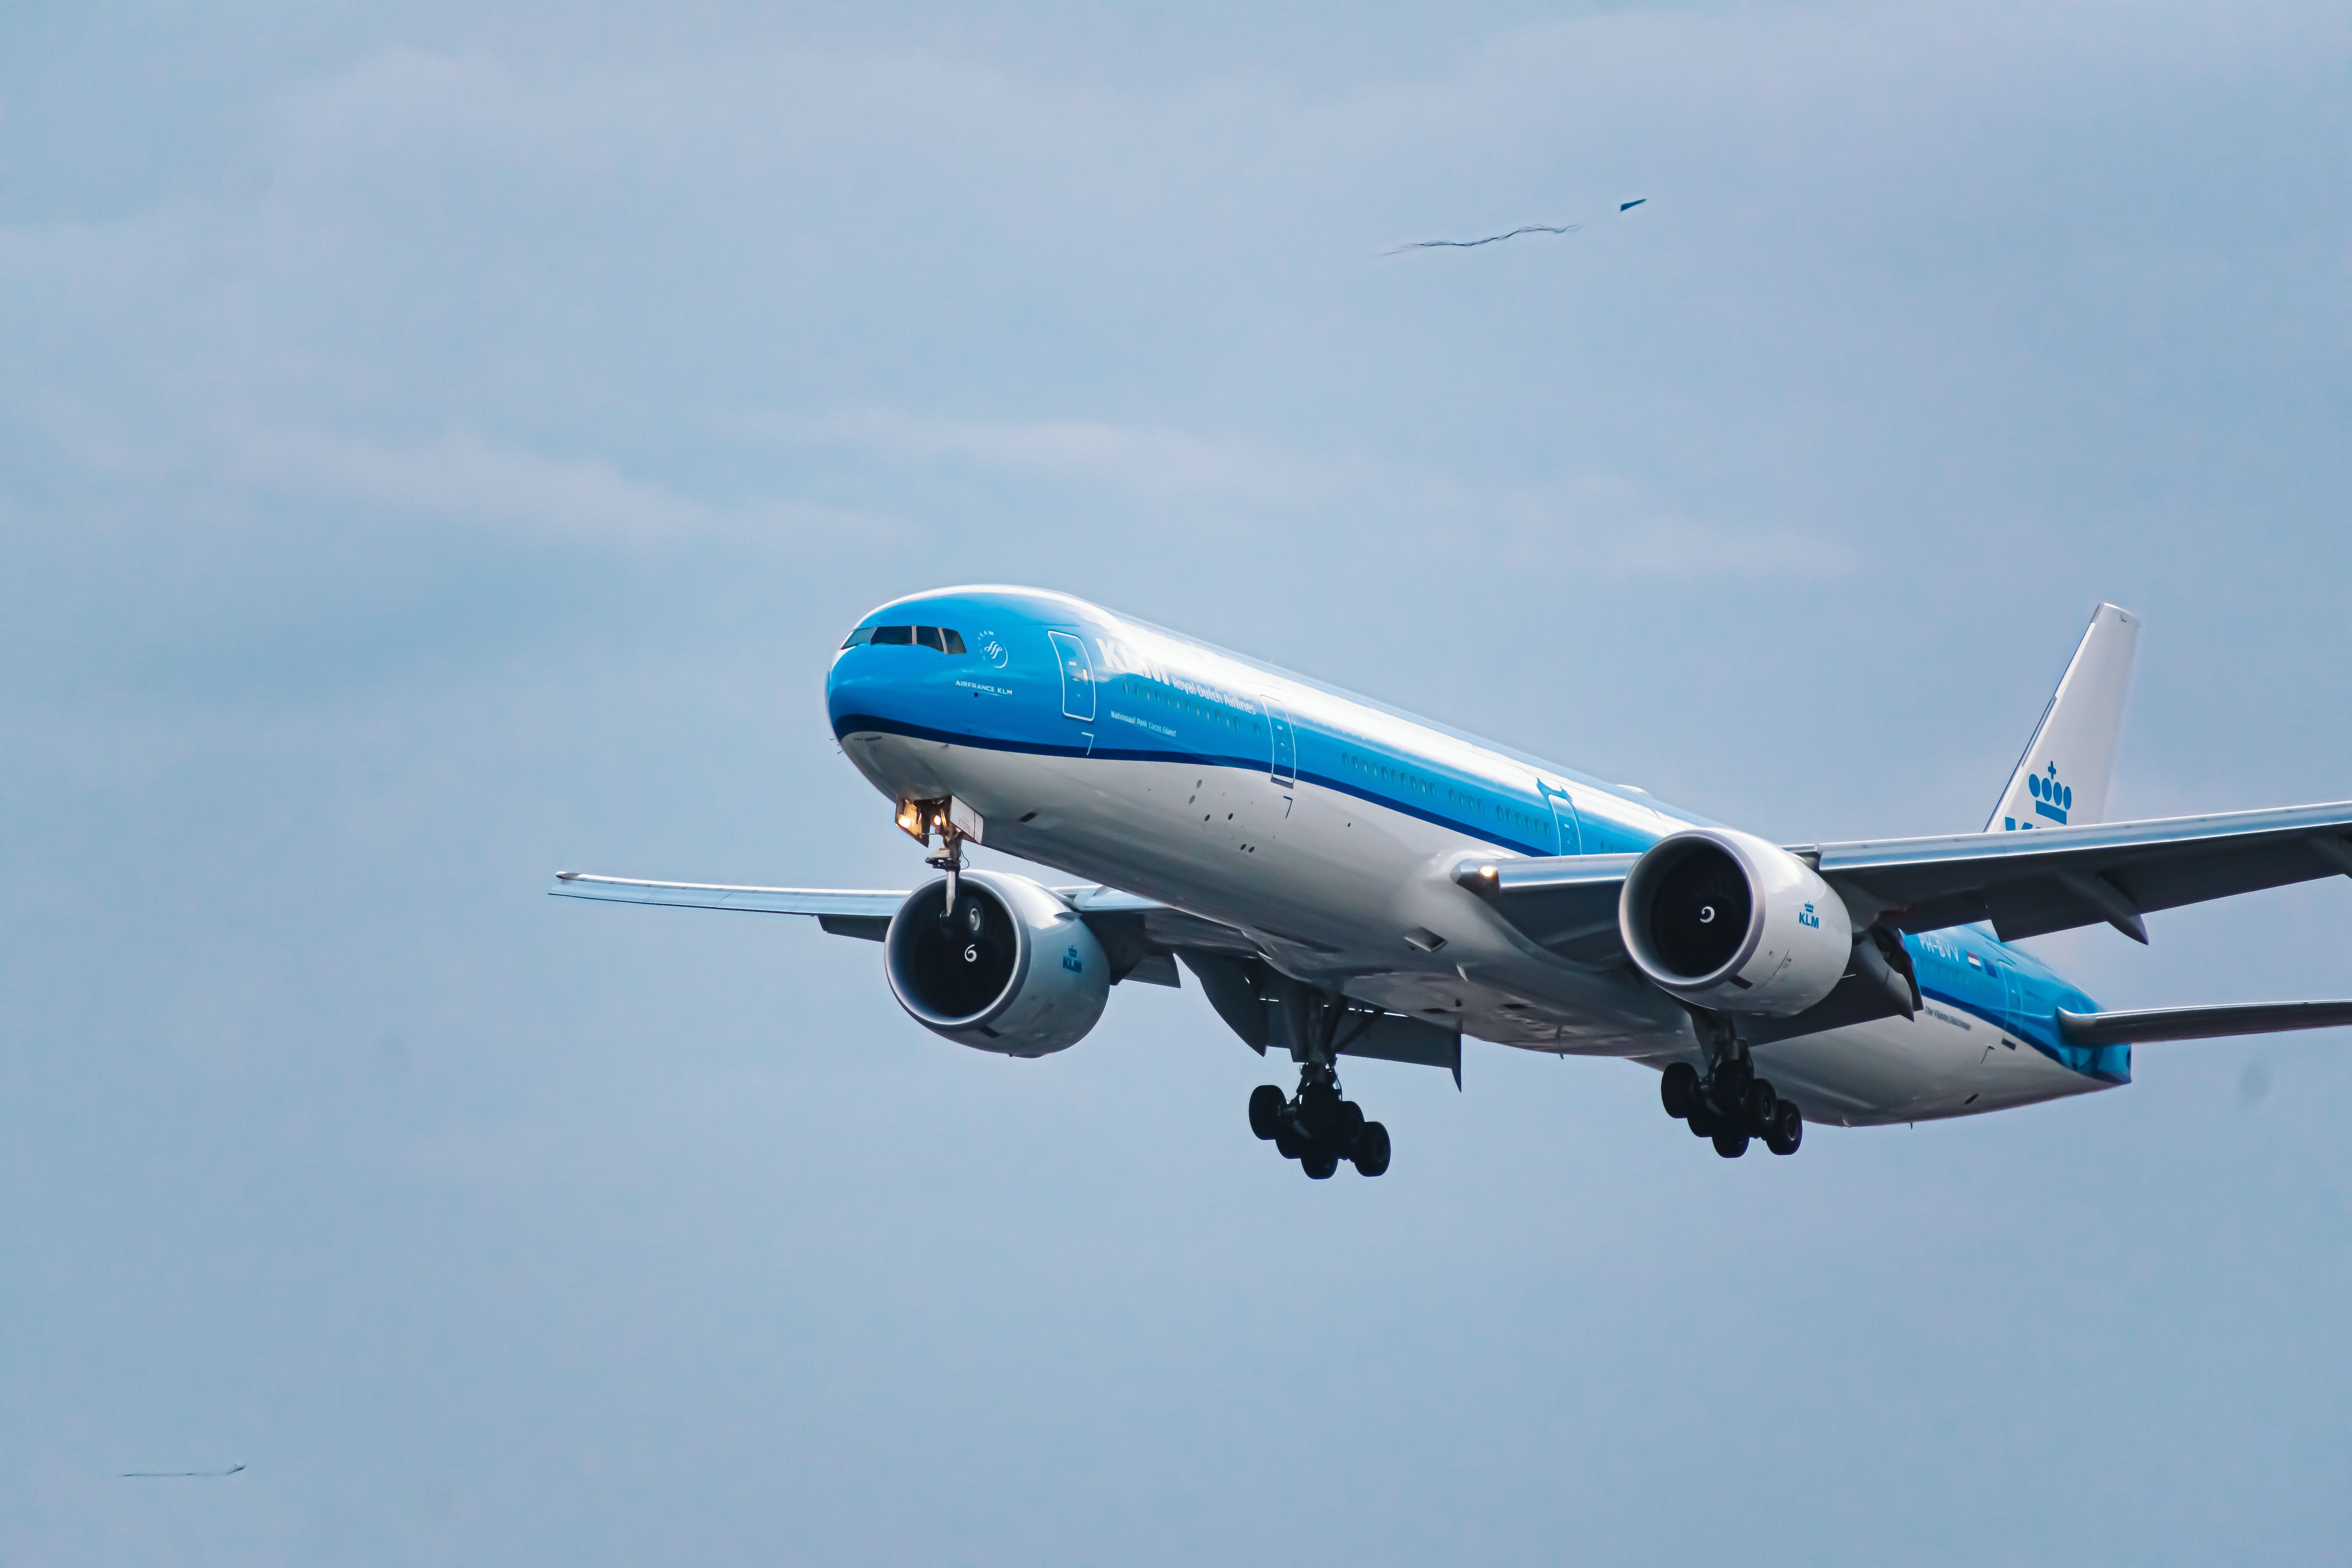 KLM Boeing 777 landing at GRU